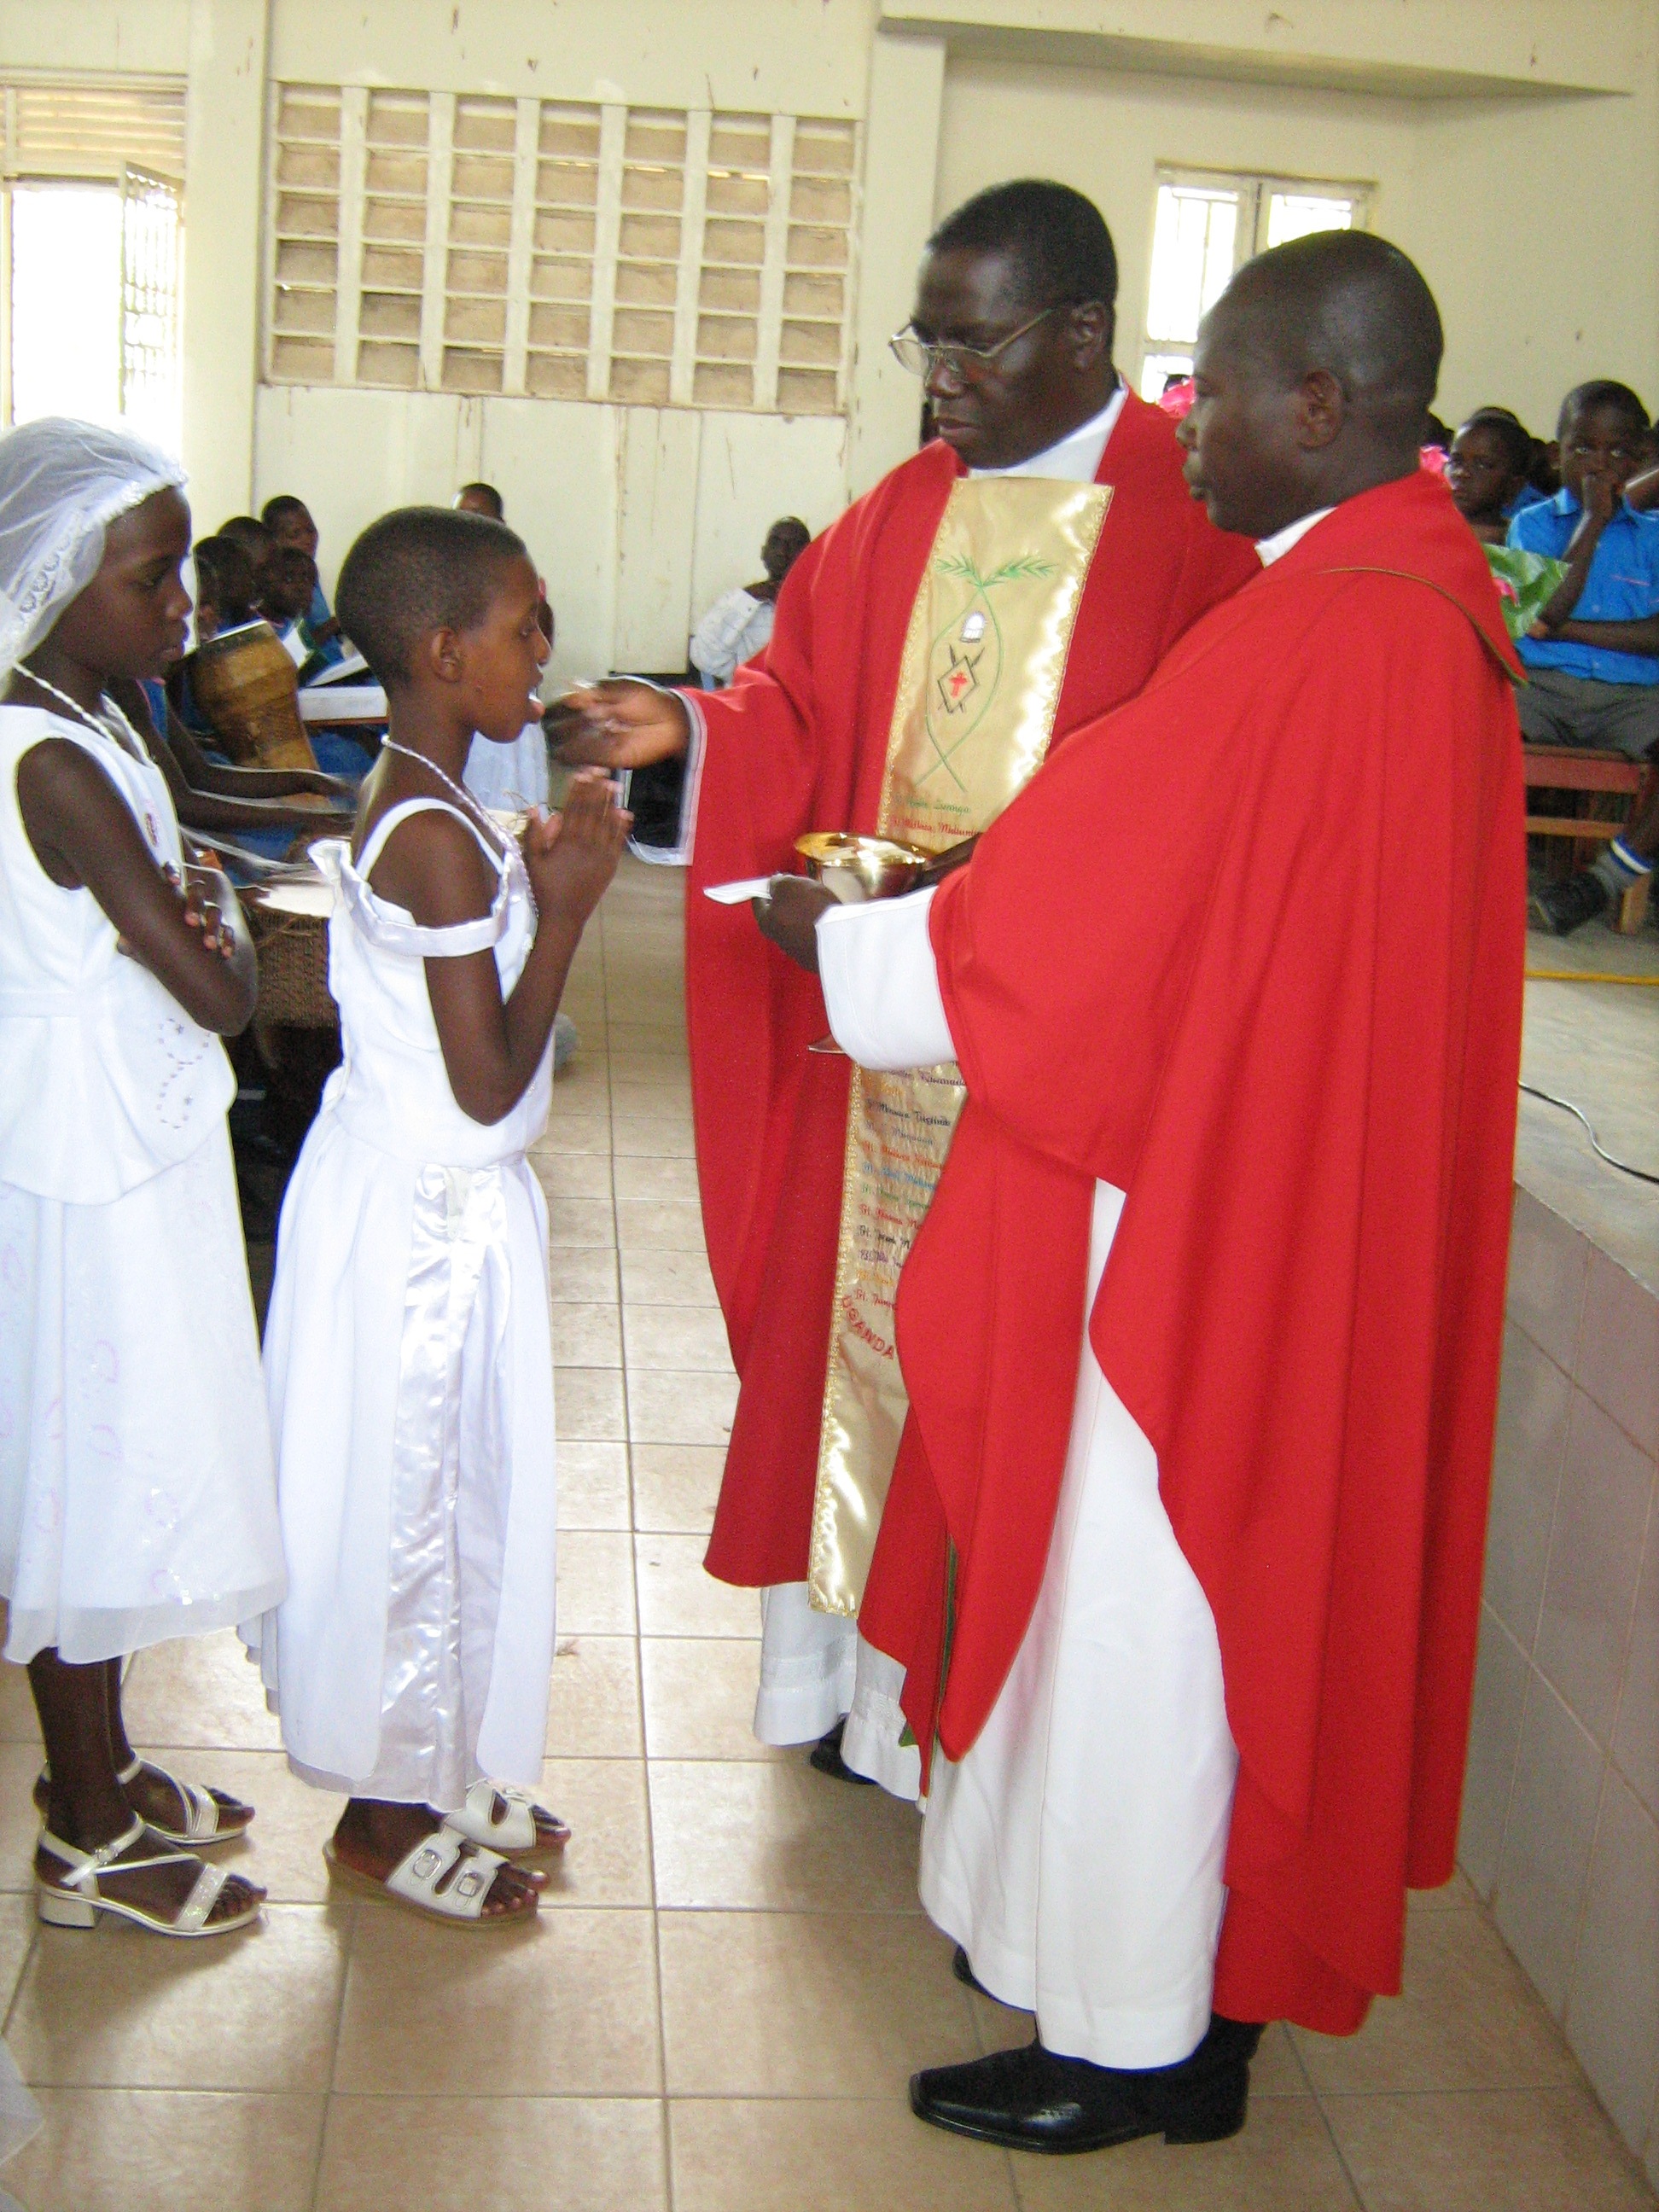 child sponsorship organizations in Uganda Catholic